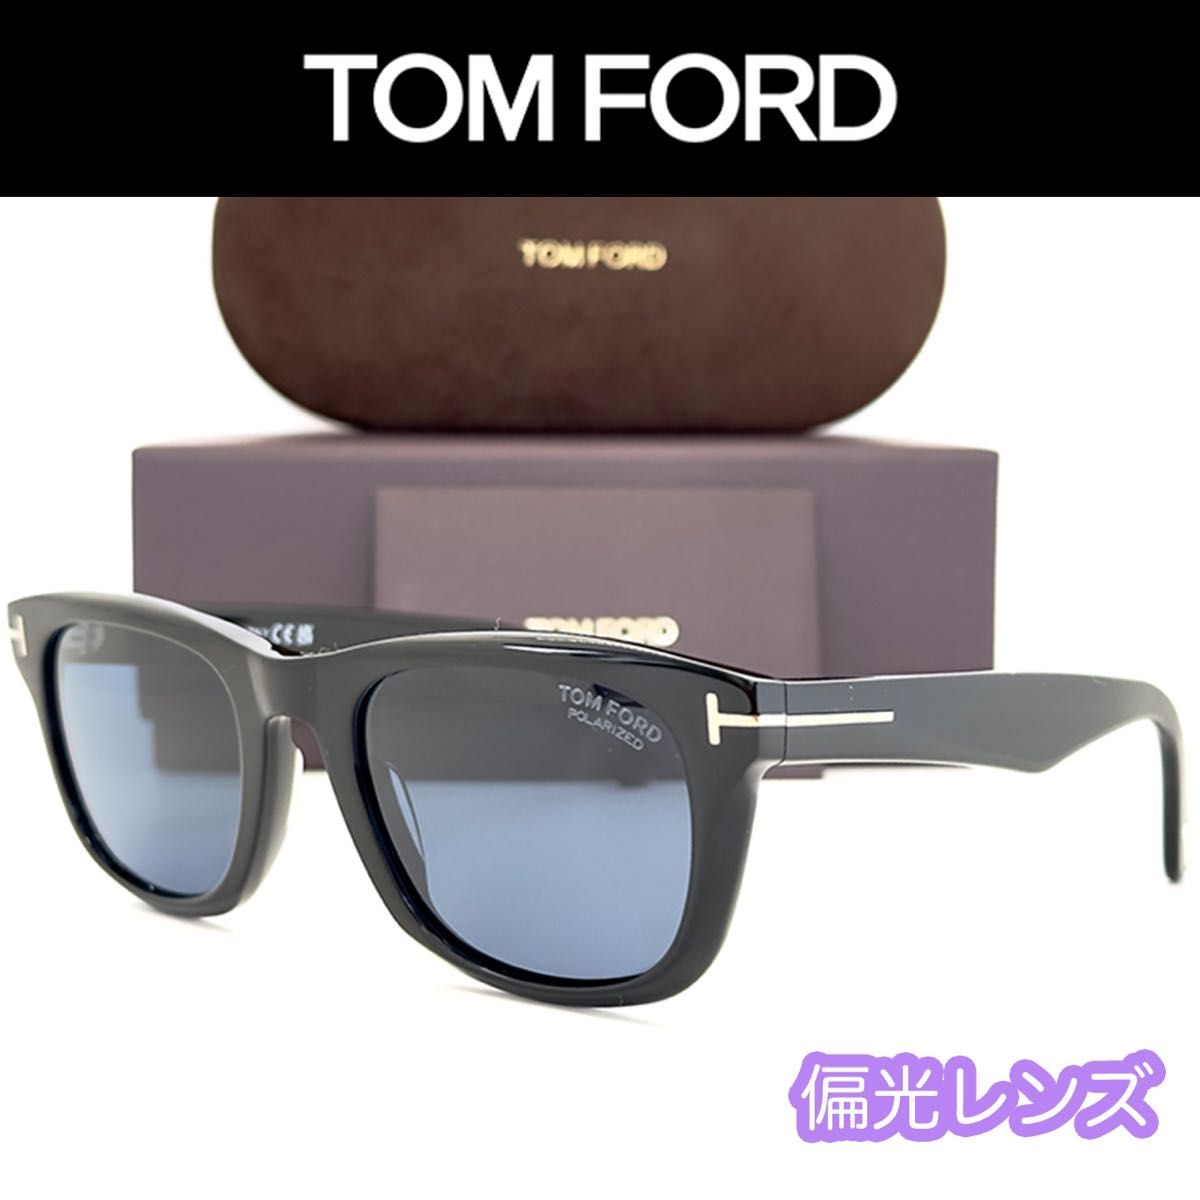 【新品/匿名配送】TOM FORD トムフォード サングラス TF1076 ブラック ゴールド 偏光レンズ メンズ イタリア製